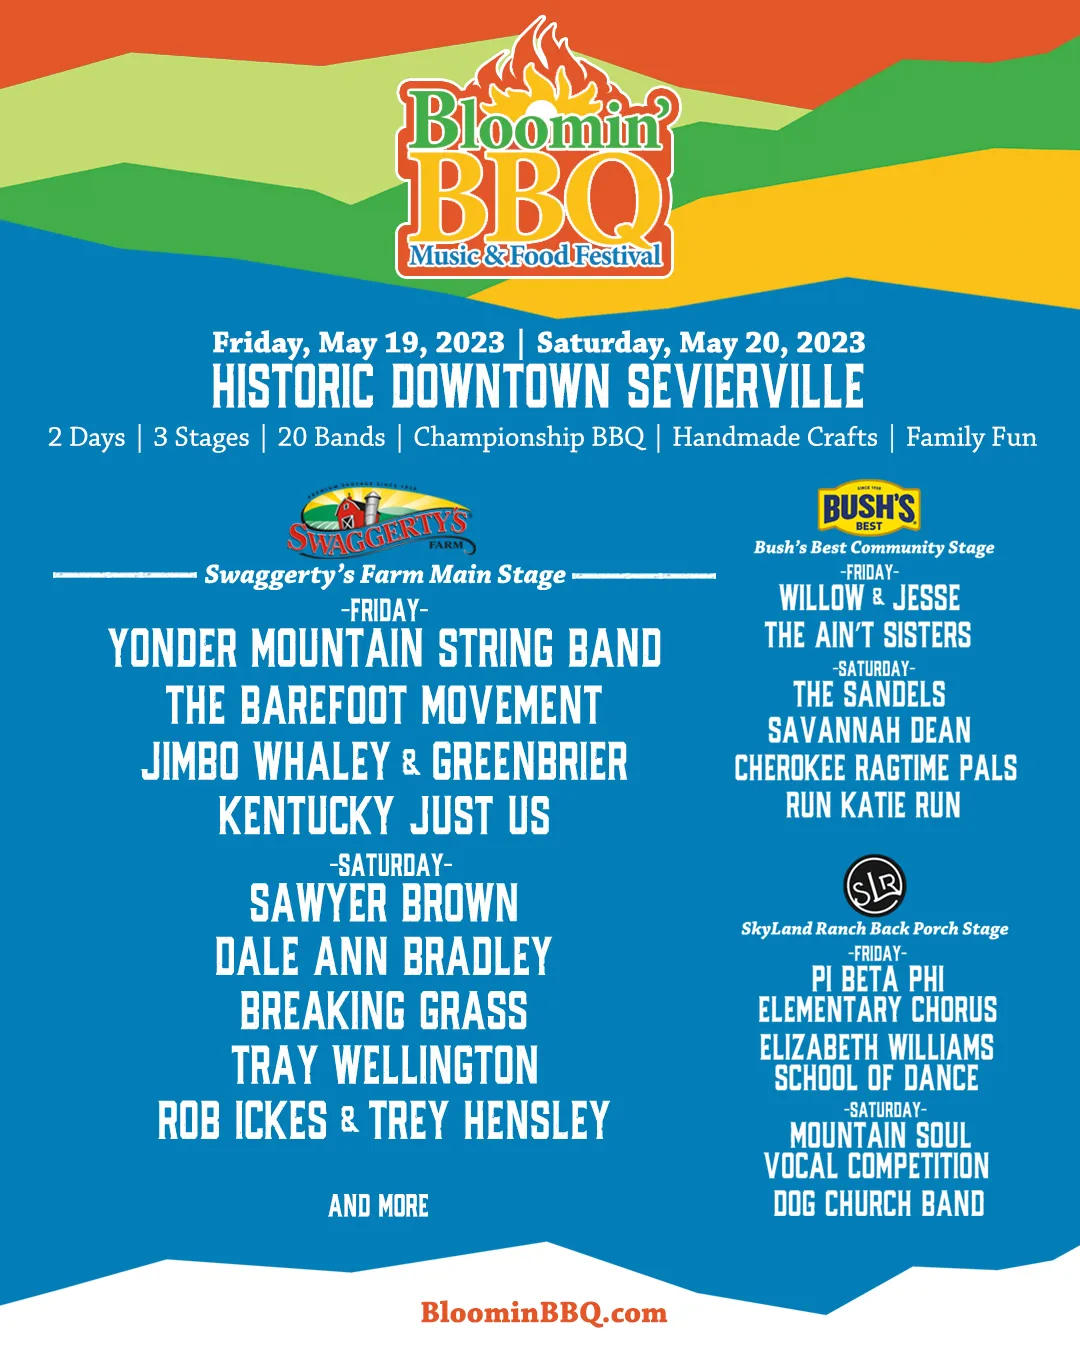 Bloomin' BBQ & Bluegrass 2023 entertainment lineup